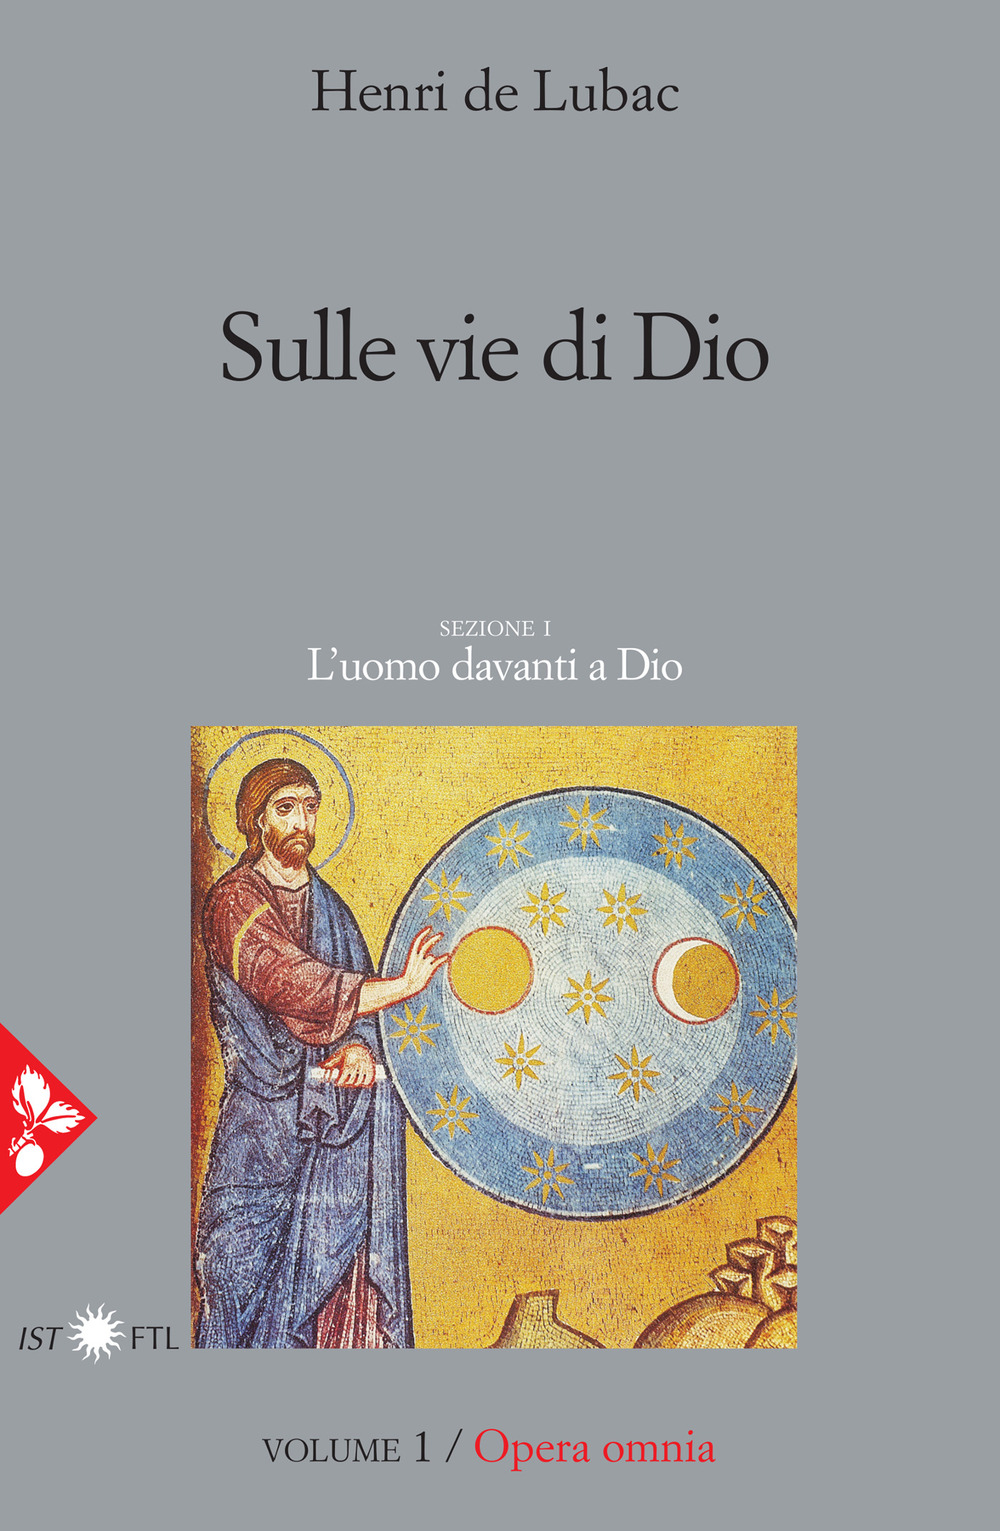 Libri Lubac Henri de - Opera Omnia Vol 01 NUOVO SIGILLATO, EDIZIONE DEL 11/02/2021 SUBITO DISPONIBILE